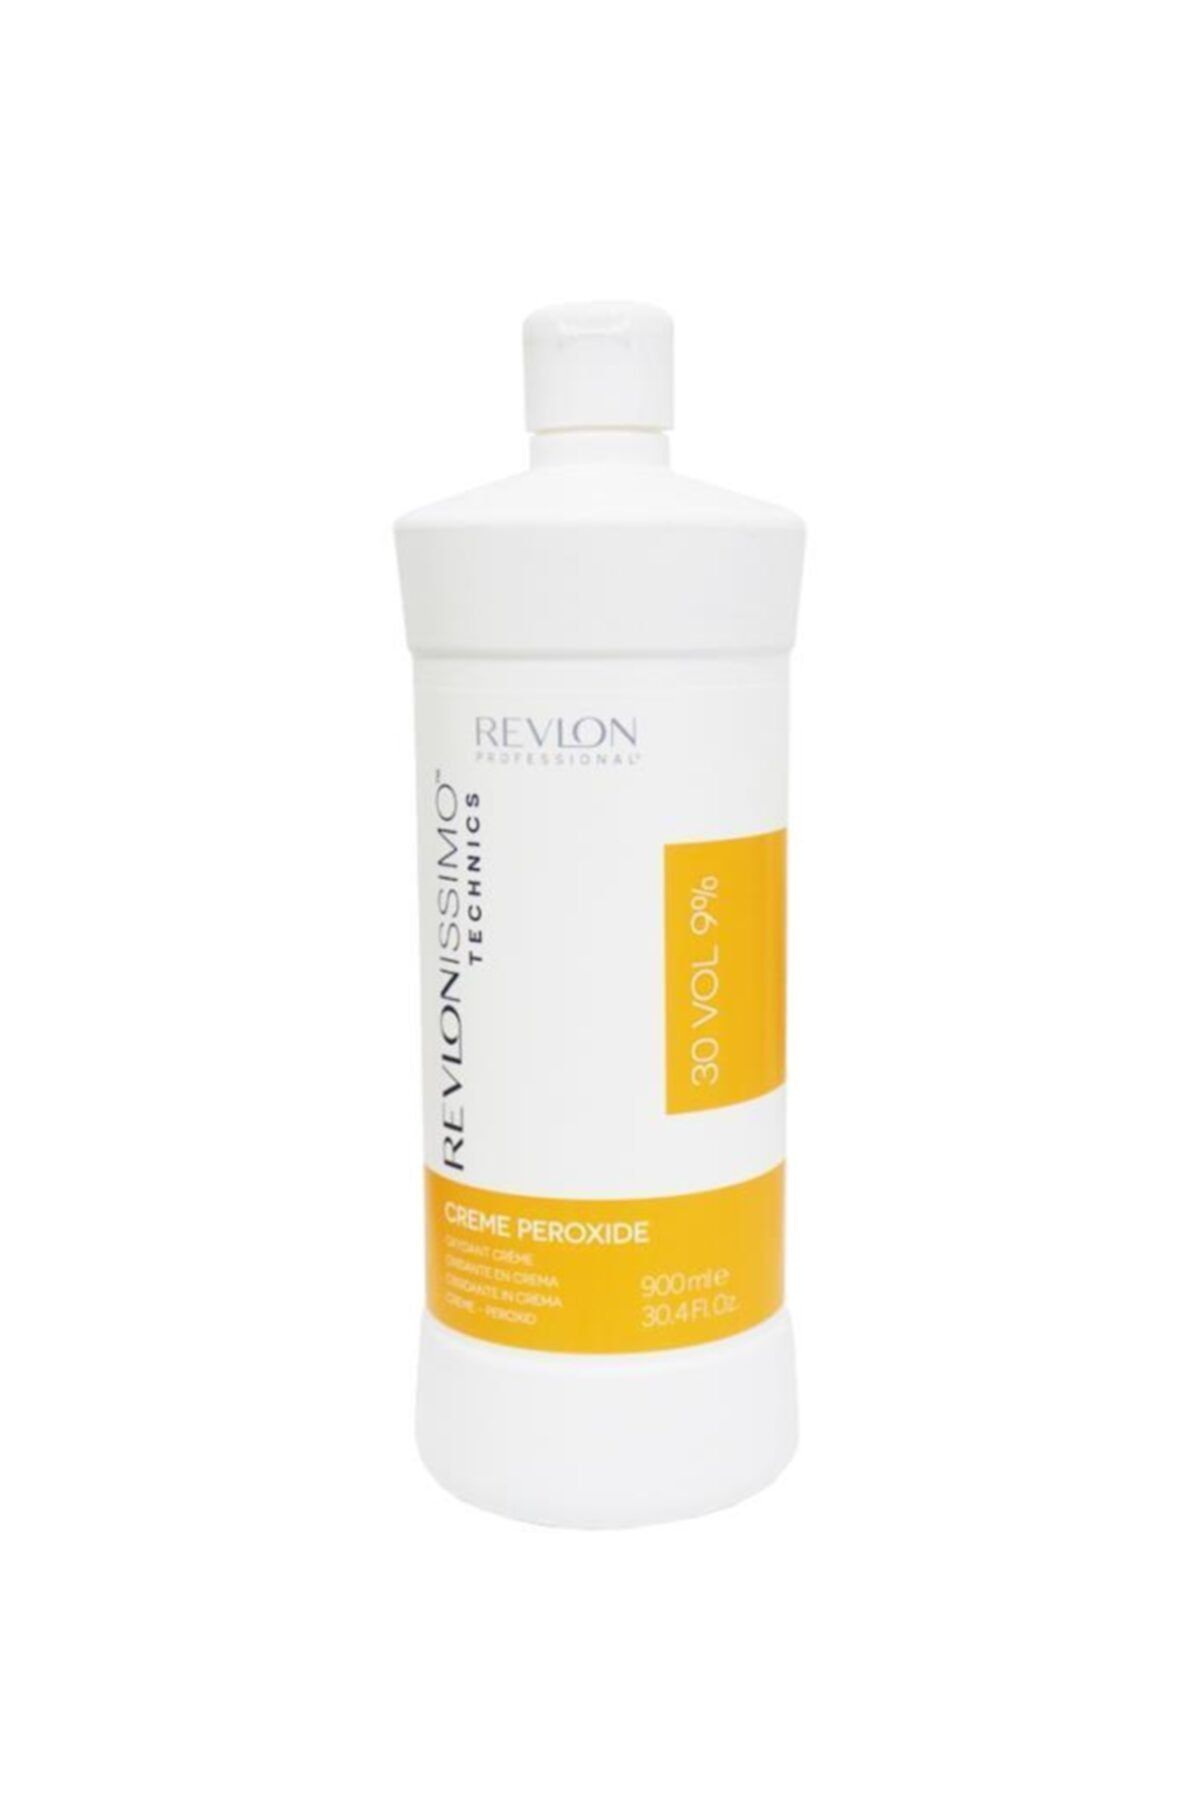 Revlon Issimo Technics Creme Peroxide Oksidan Krem 30 Vol 900 ml